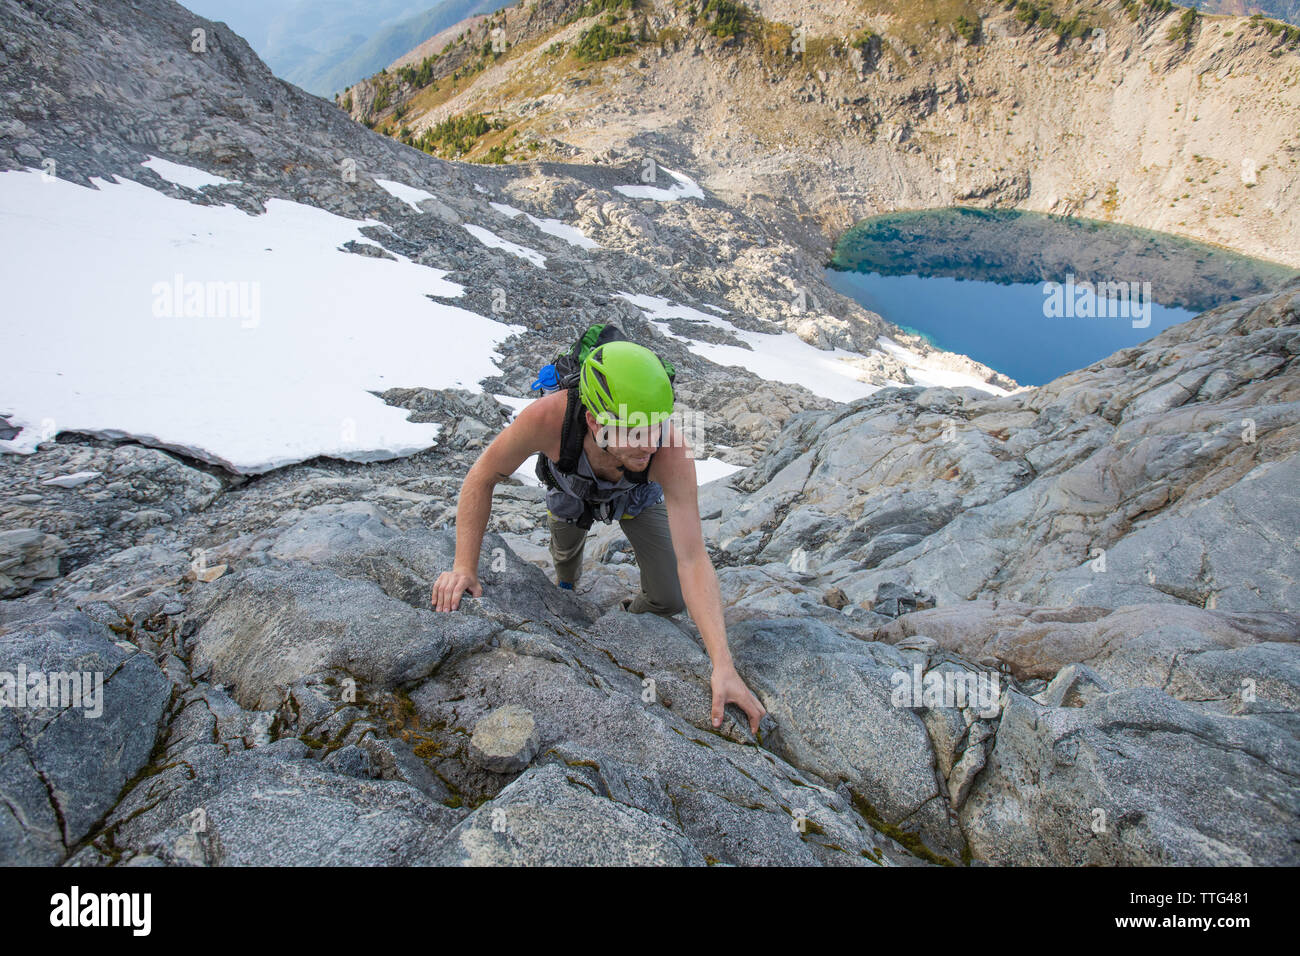 Ein Bergsteiger steigt auf einem felsigen Grat auf Douglas Peak, British Columbia. Stockfoto